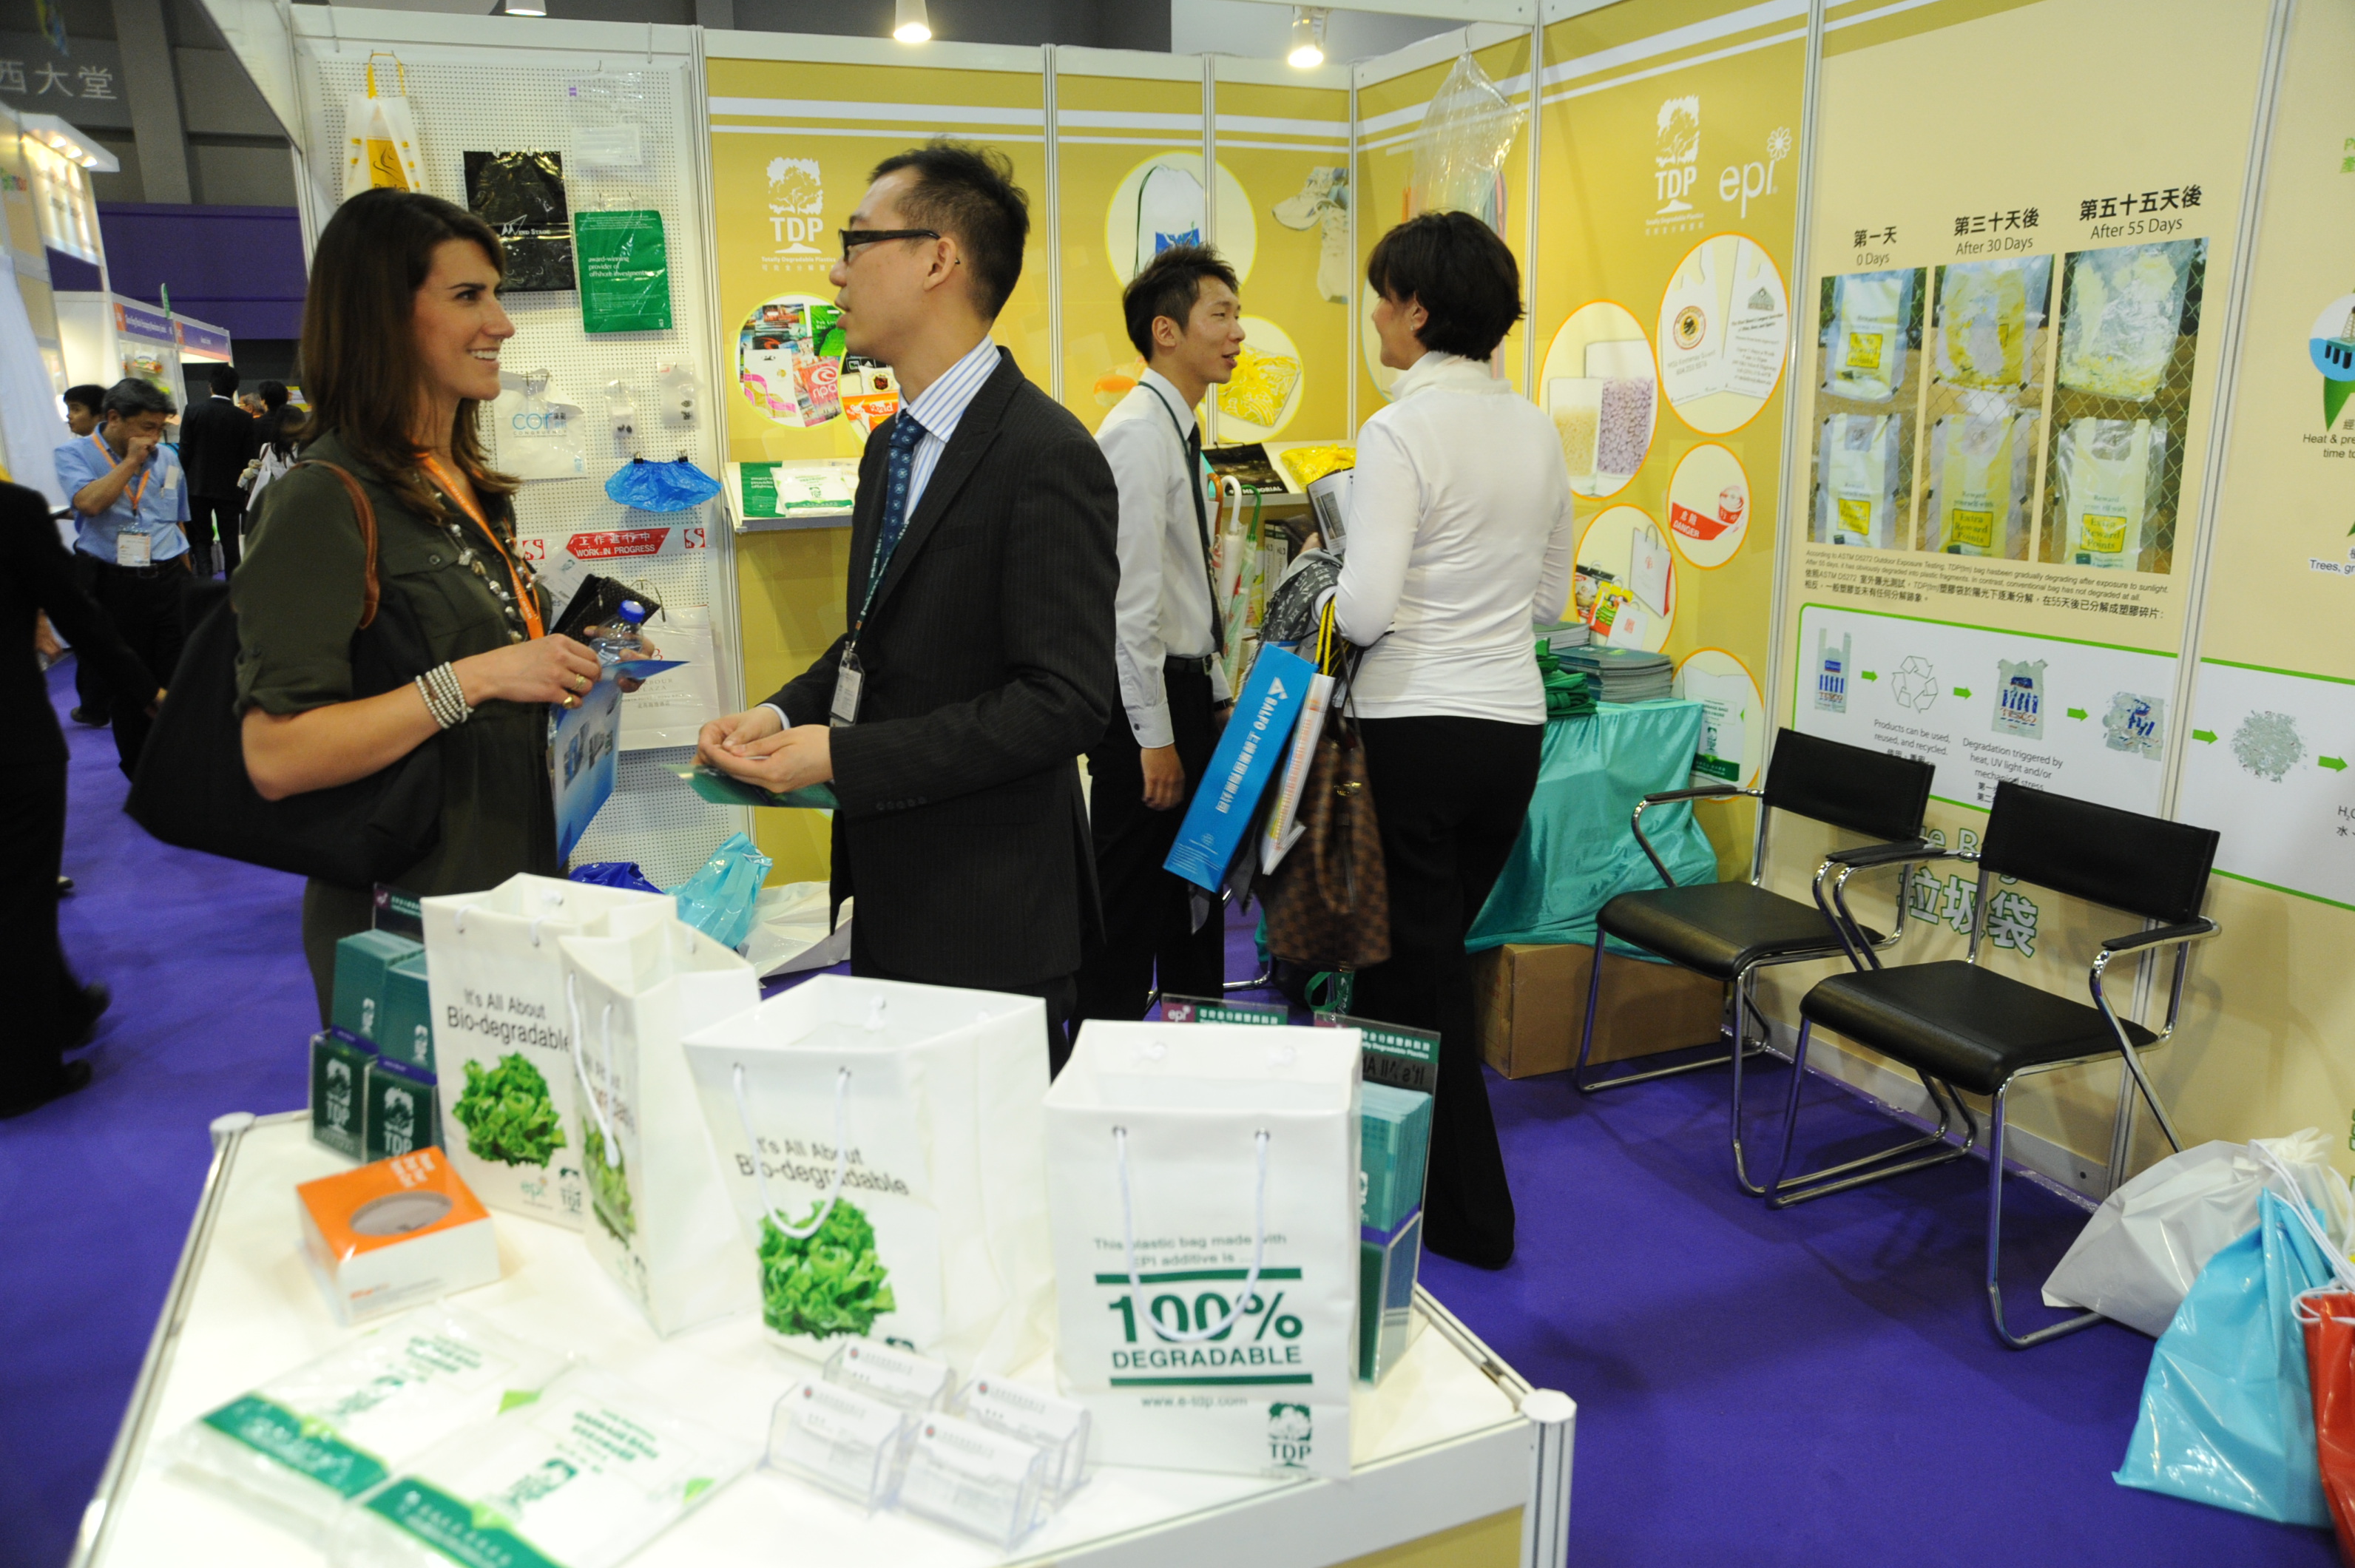 印刷包装设备展|2020上海国际包装制品与材料展览会-招商工作开启